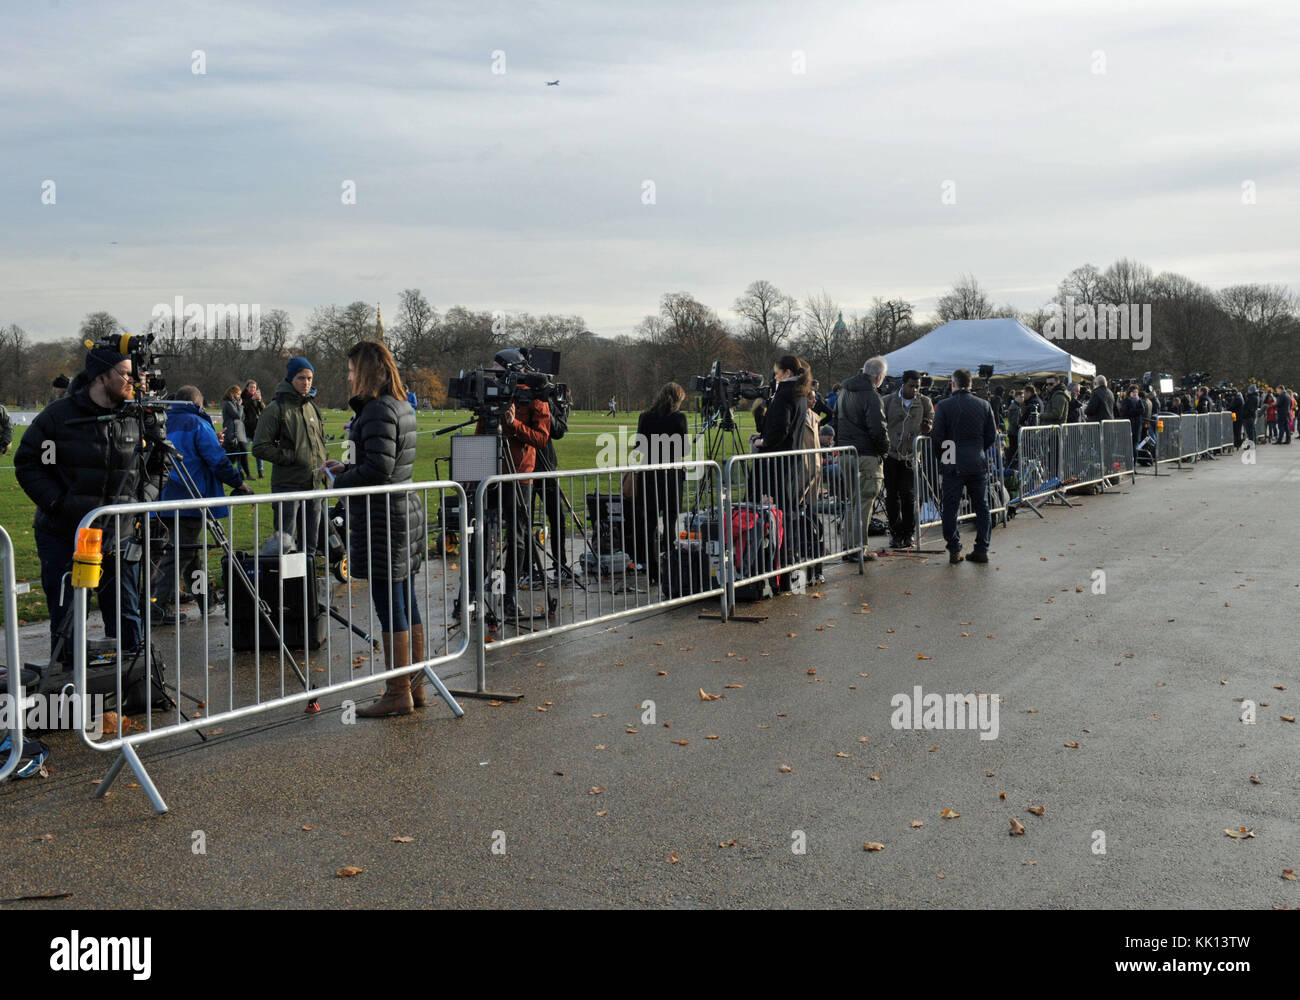 Medien sammeln außerhalb der Kensington Palace, London, nachdem es bekannt wurde, dass Prinz Harry und Meghan Markle tätig sind. Stockfoto